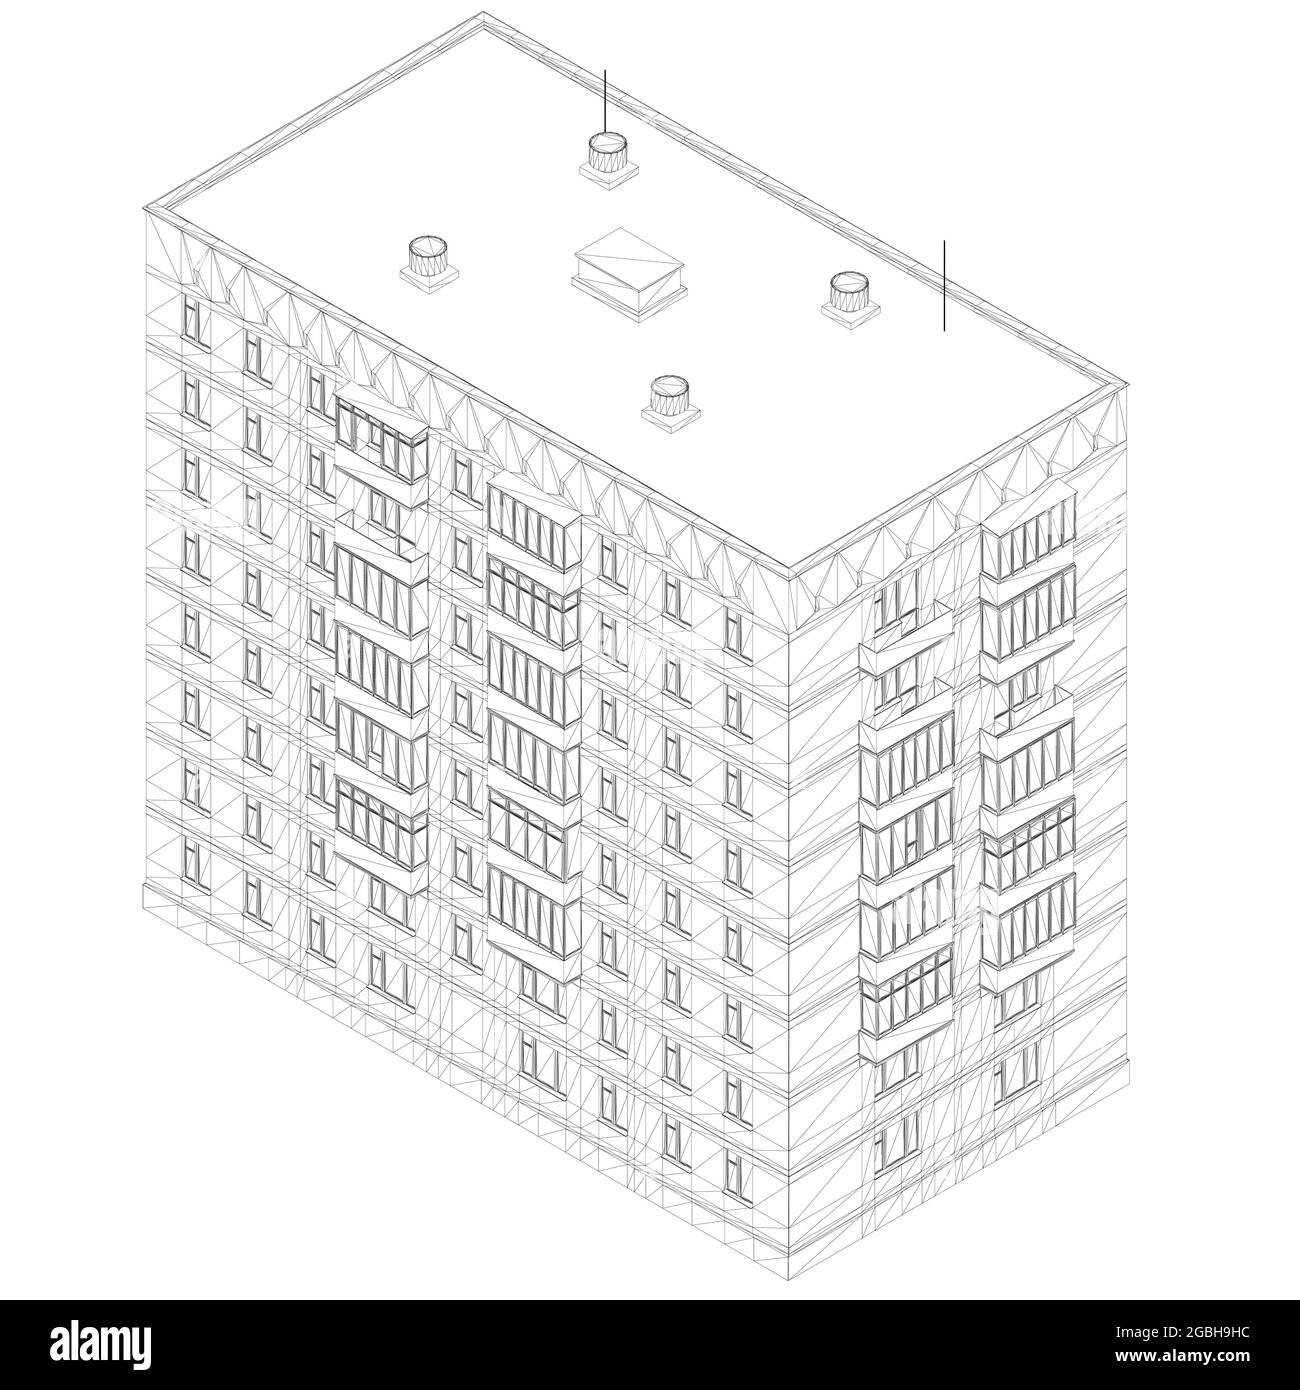 Contour d'un immeuble résidentiel de plusieurs étages à partir de lignes noires isolées sur un fond blanc. Vue isométrique. 3D. Illustration vectorielle. Illustration de Vecteur